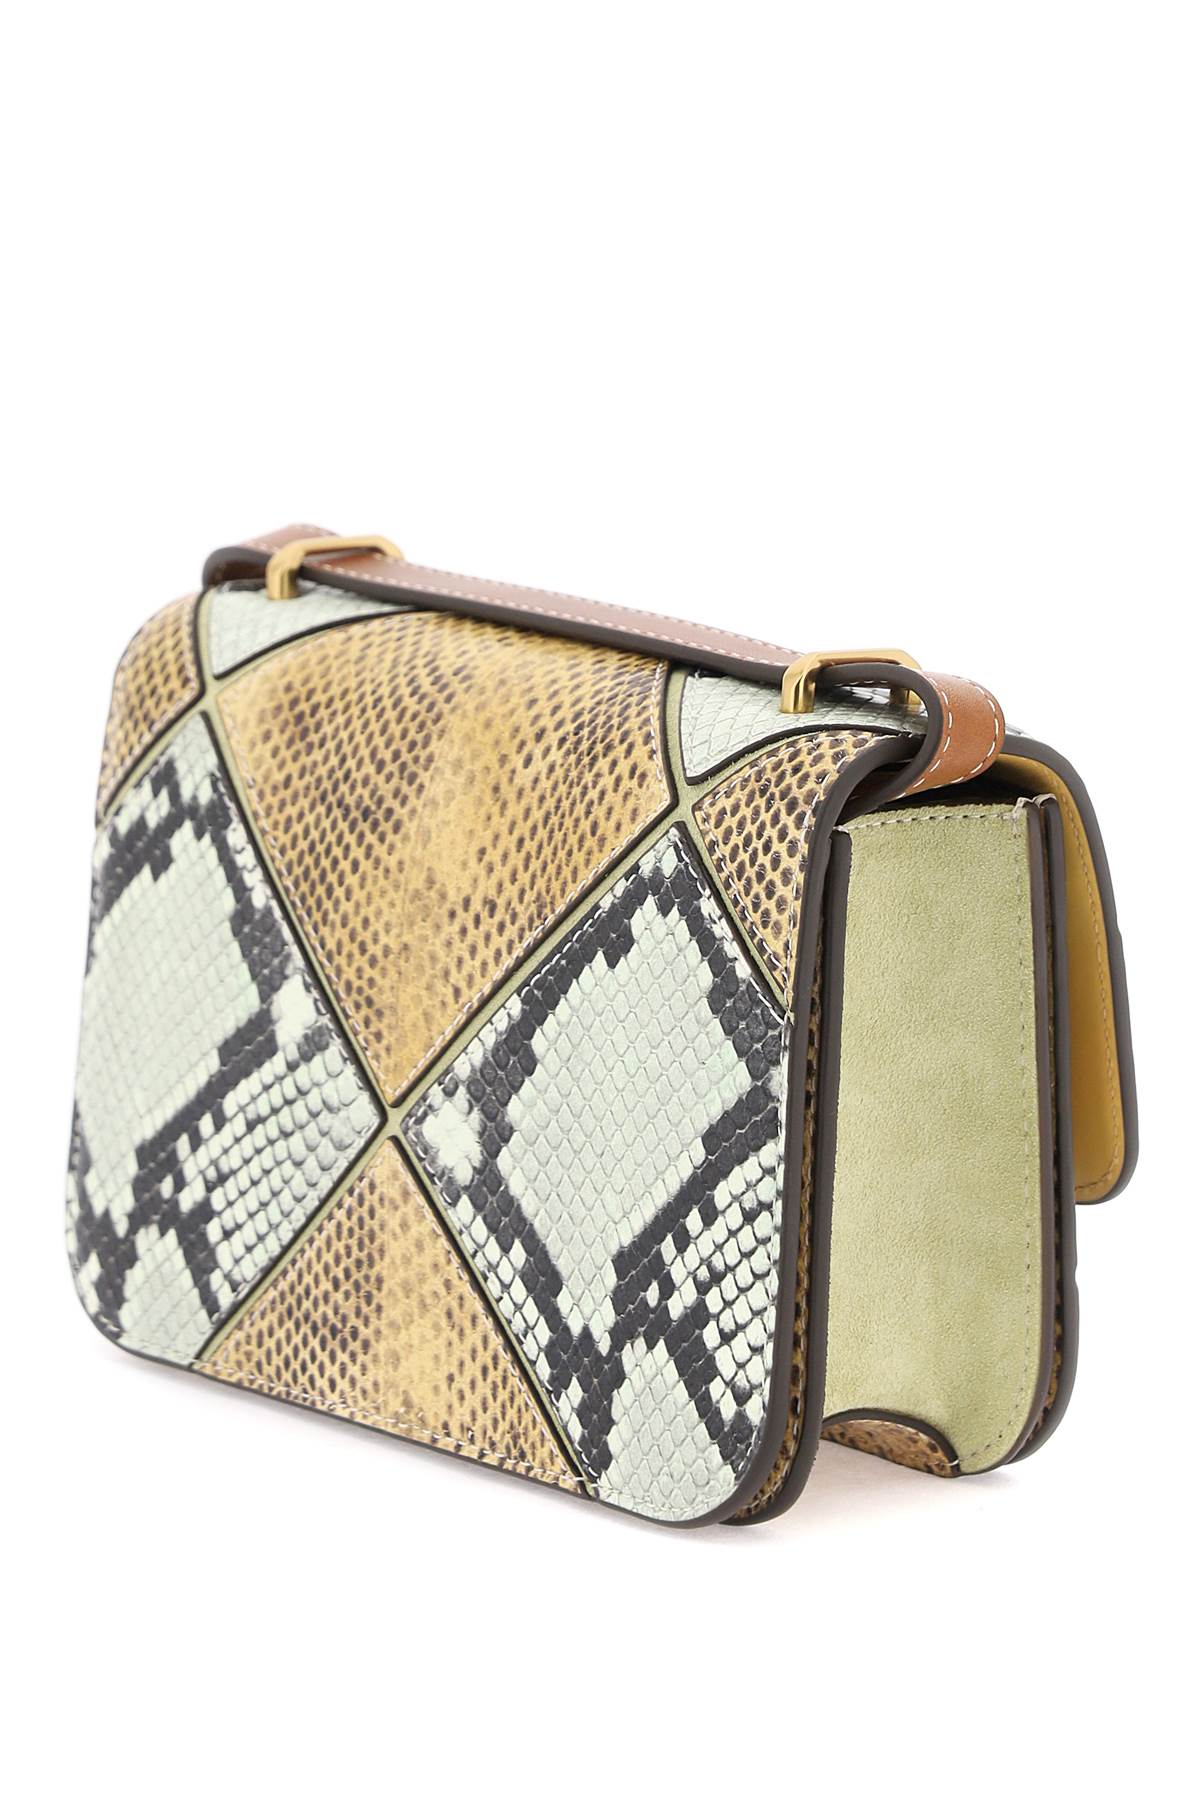 TORY BURCH Multicolor Crocodile-printed Leather Shoulder Handbag